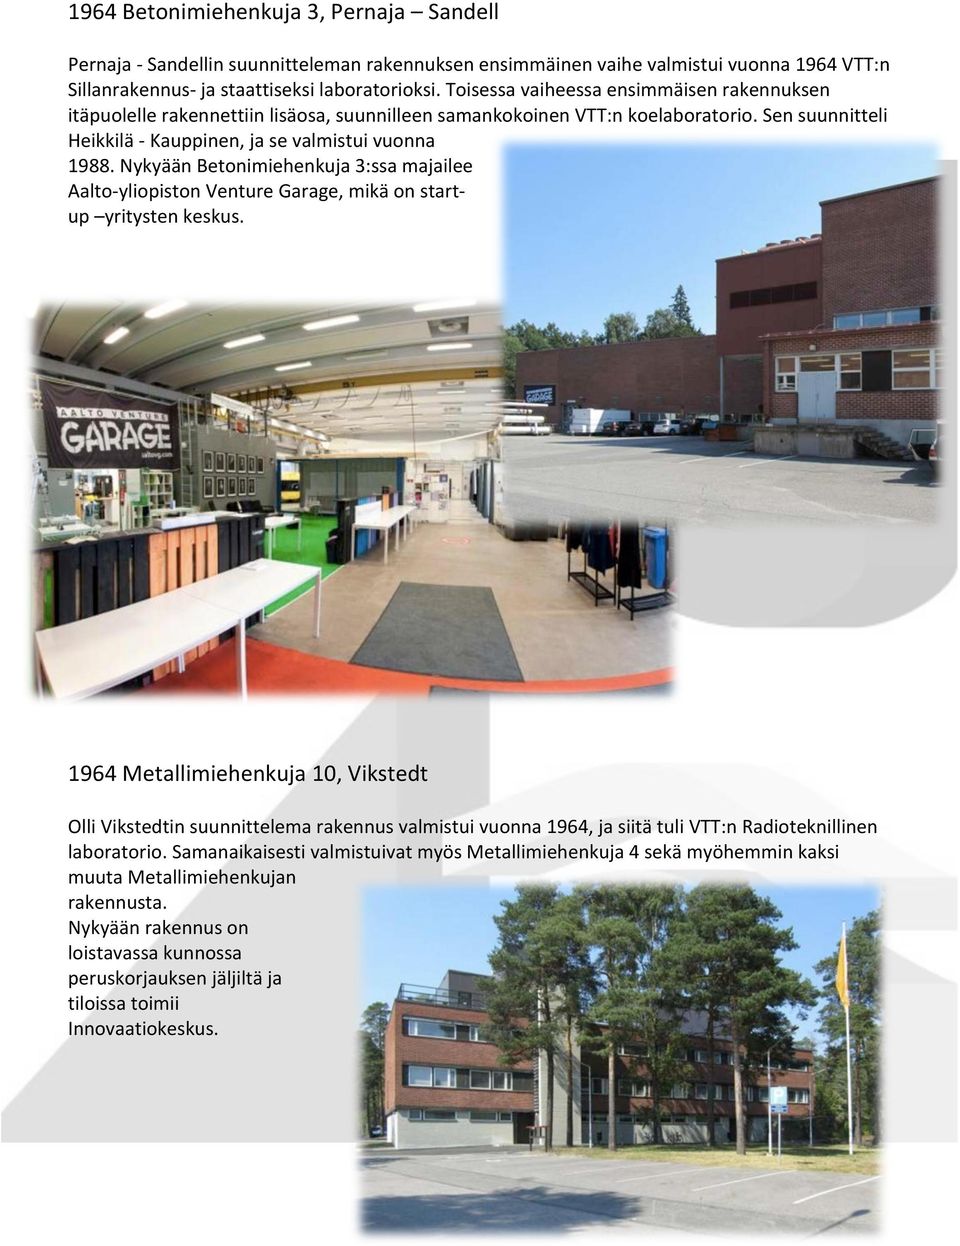 Nykyään Betonimiehenkuja 3:ssa majailee Aalto- yliopiston Venture Garage, mikä on start- up yritysten keskus.